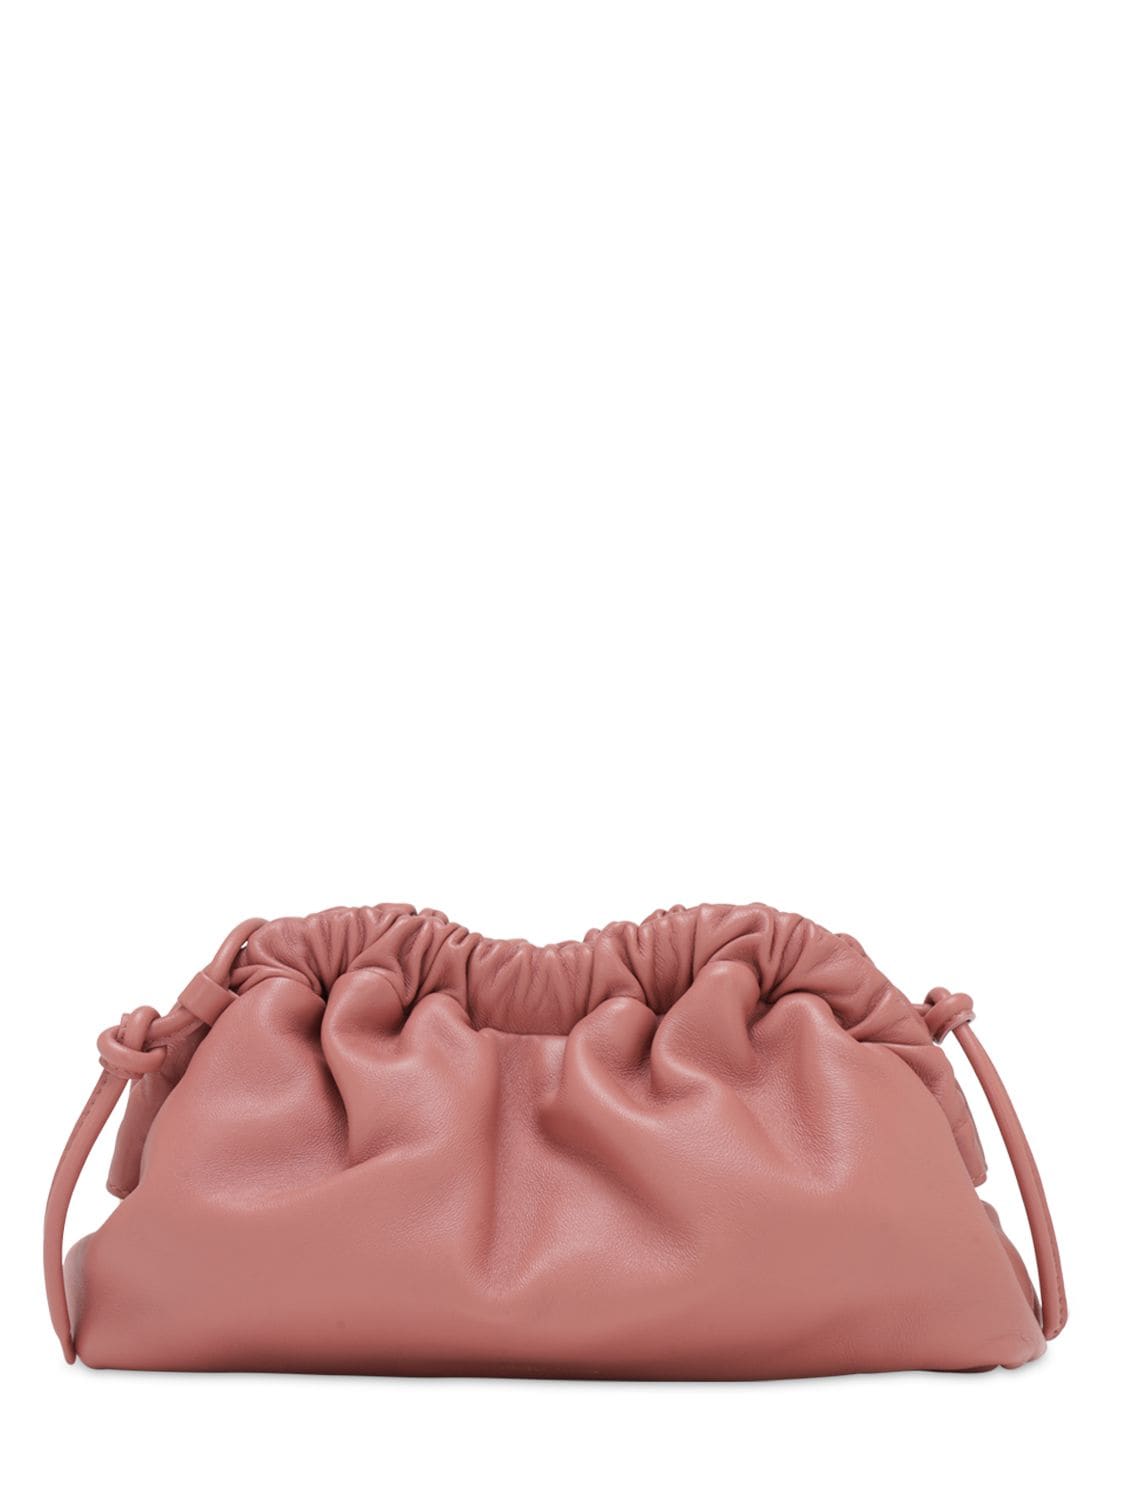 Mansur Gavriel Mini Cloud Leather Clutch In Blush | ModeSens